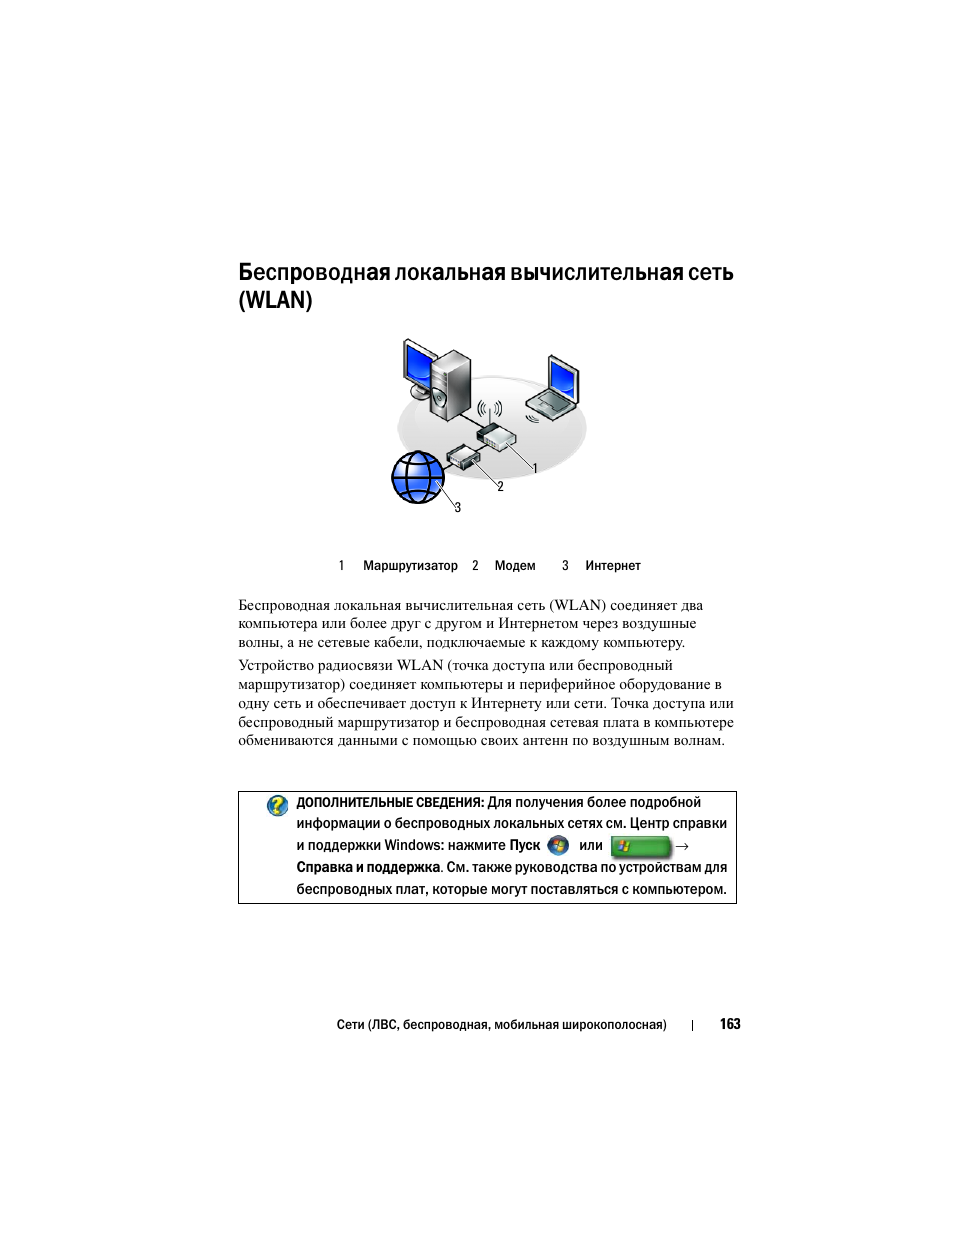 Беспроводная локальная вычислительная сеть (wlan) | Инструкция по эксплуатации Dell Inspiron 560 | Страница 163 / 384